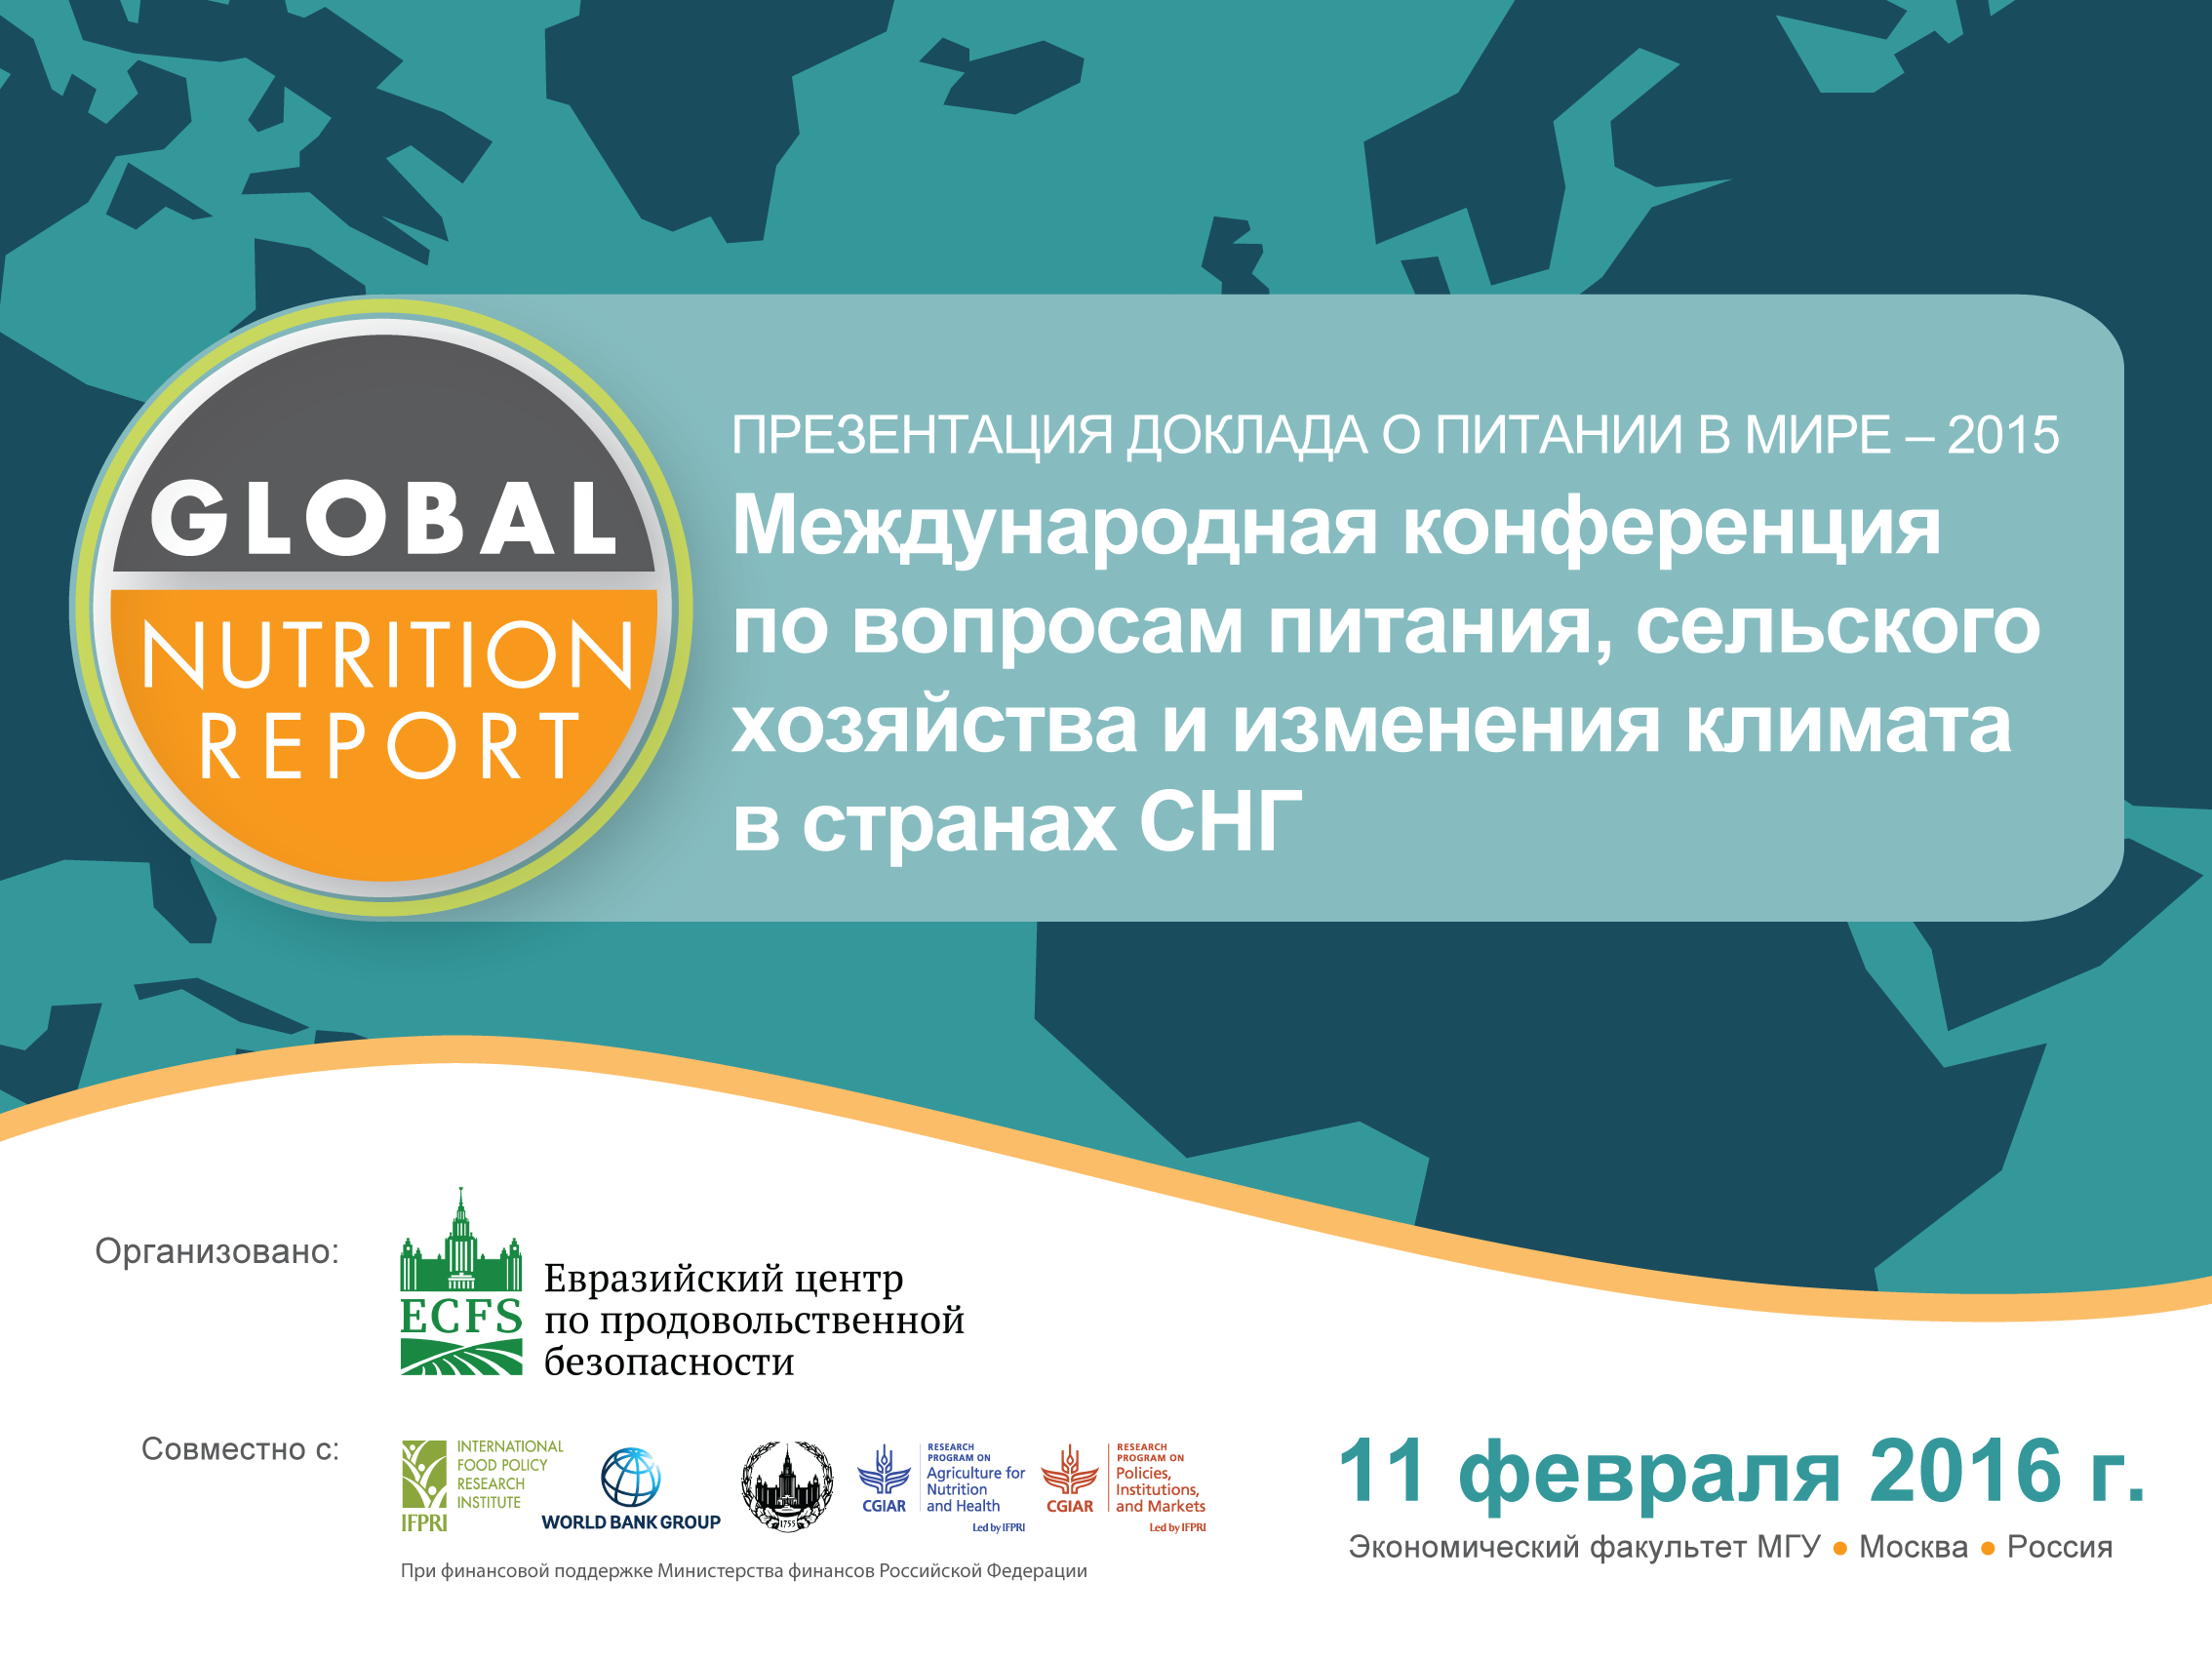 Международная конференция по вопросам питания, сельского хозяйства и изменения климата в странах СНГ с презентацией «Доклада о питании в мире – 2015»